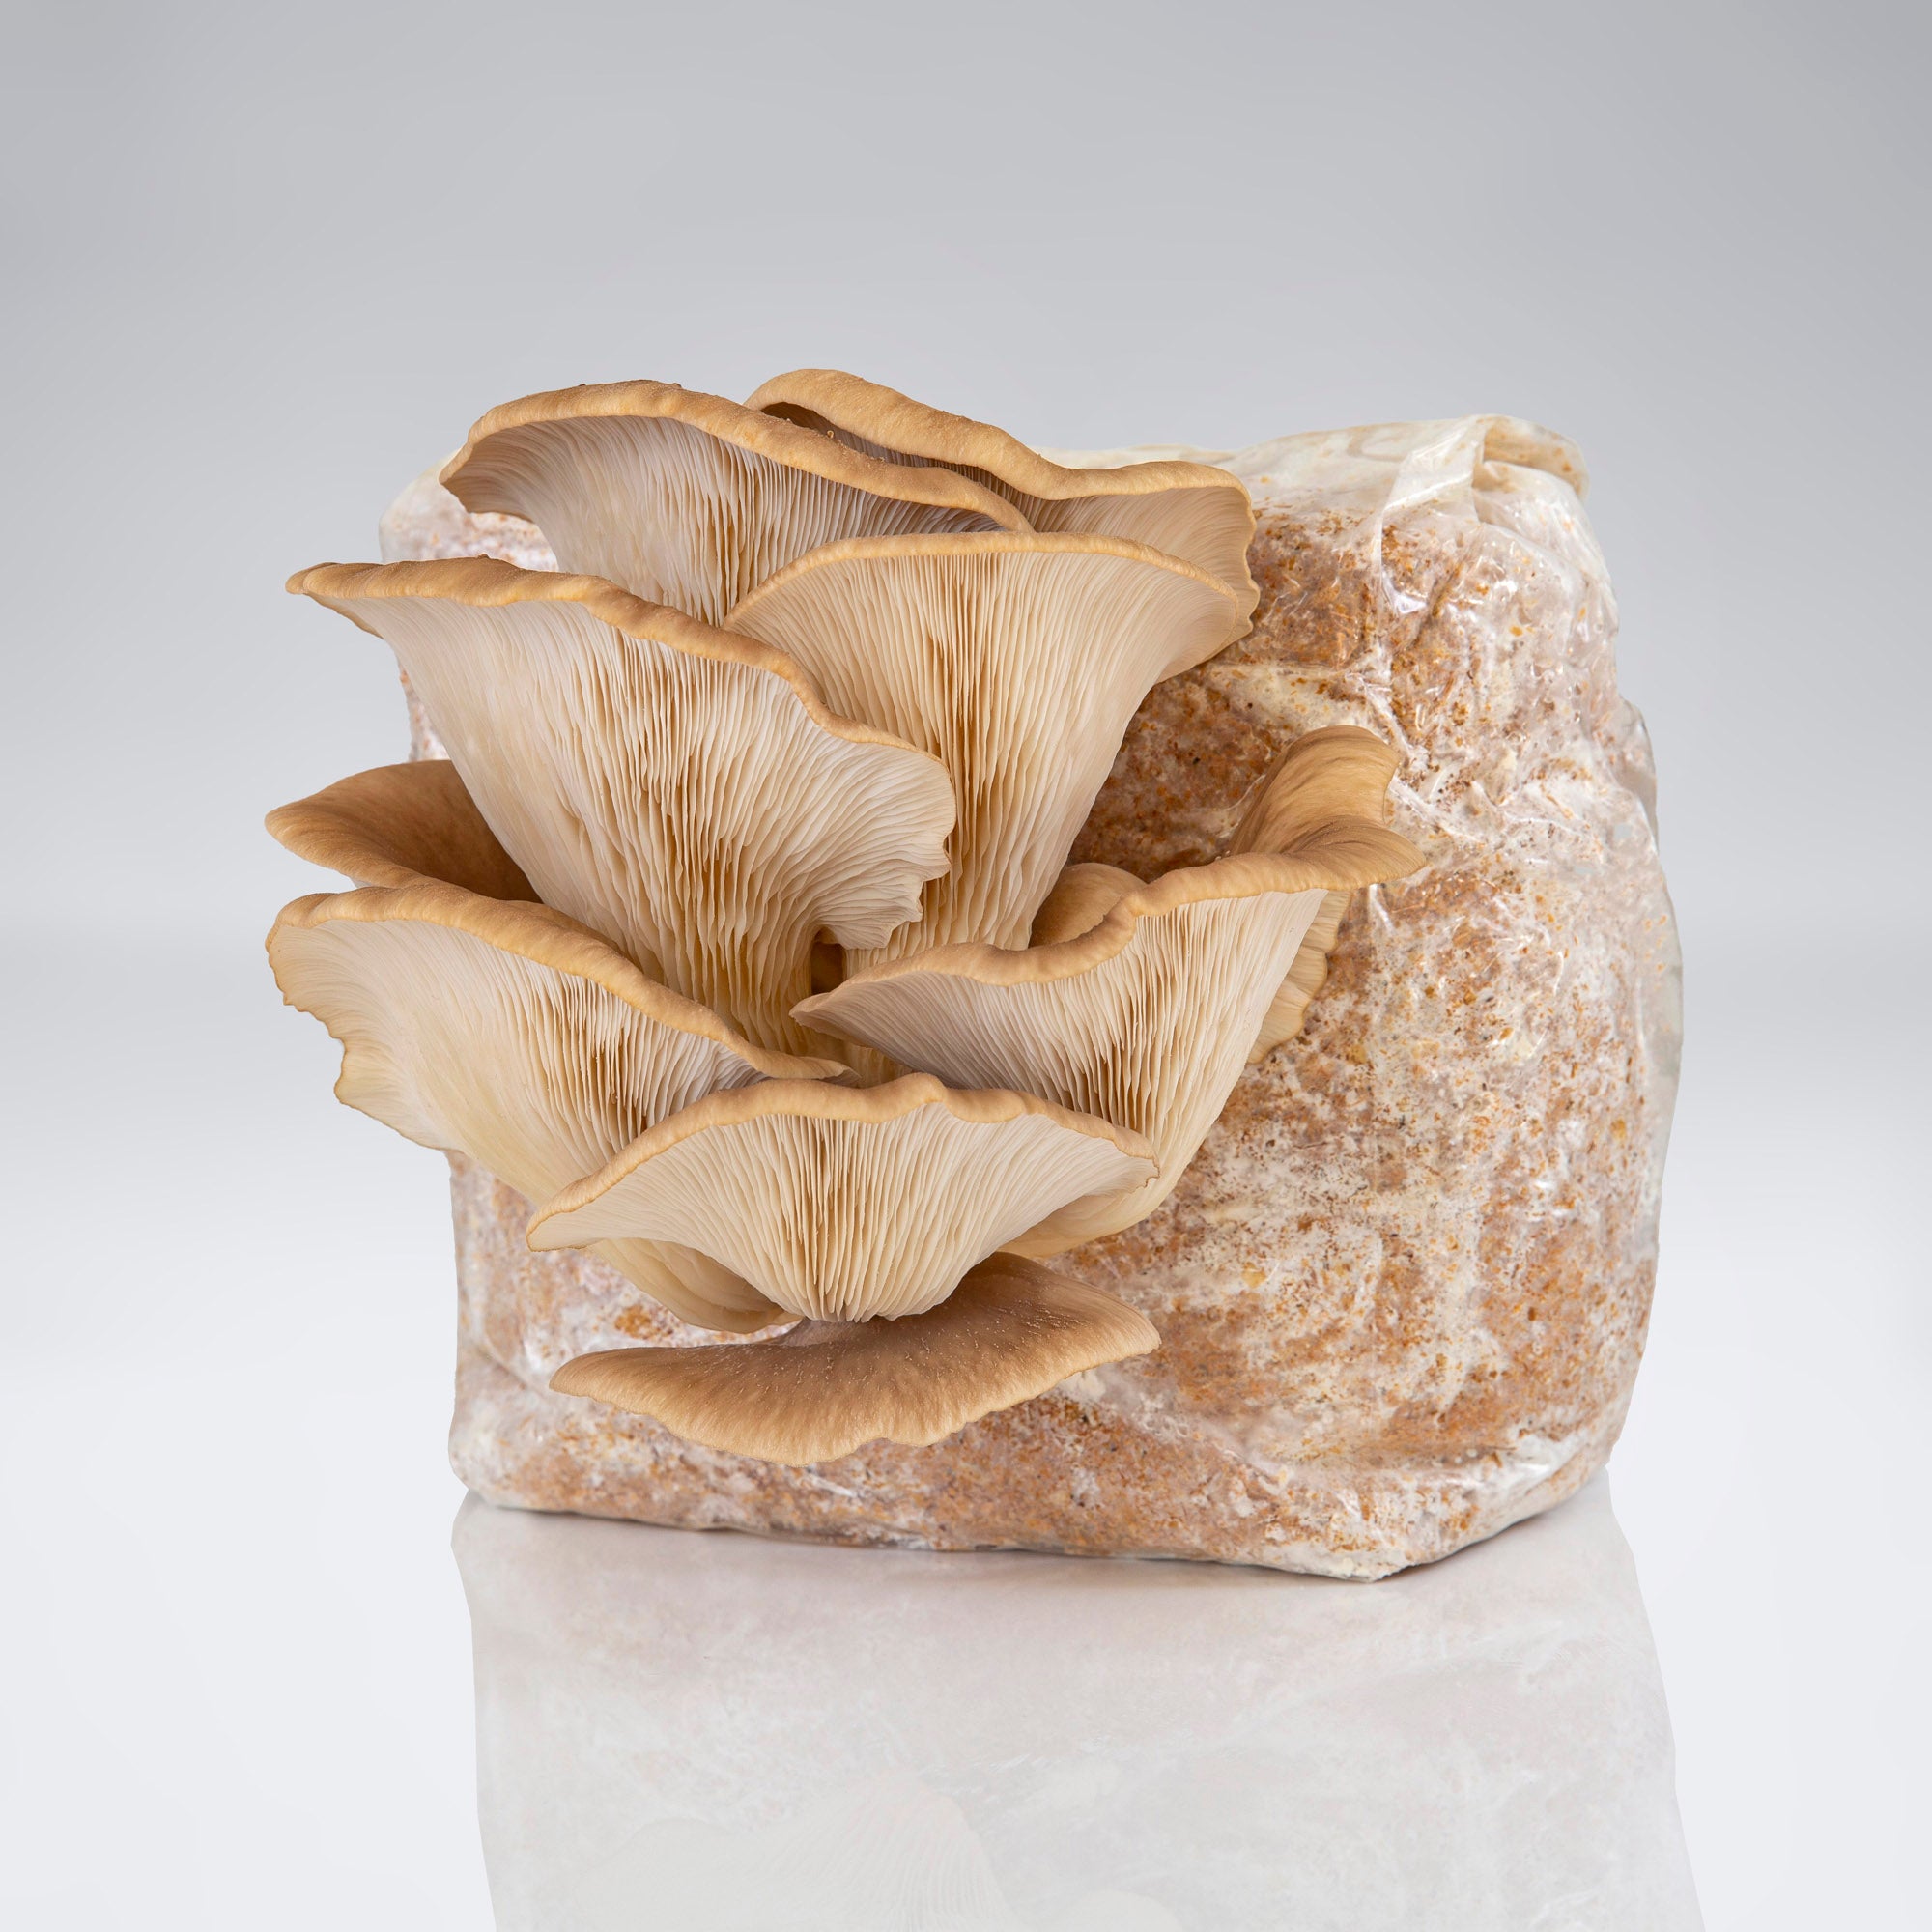 Raglan Oyster Mushroom Kit